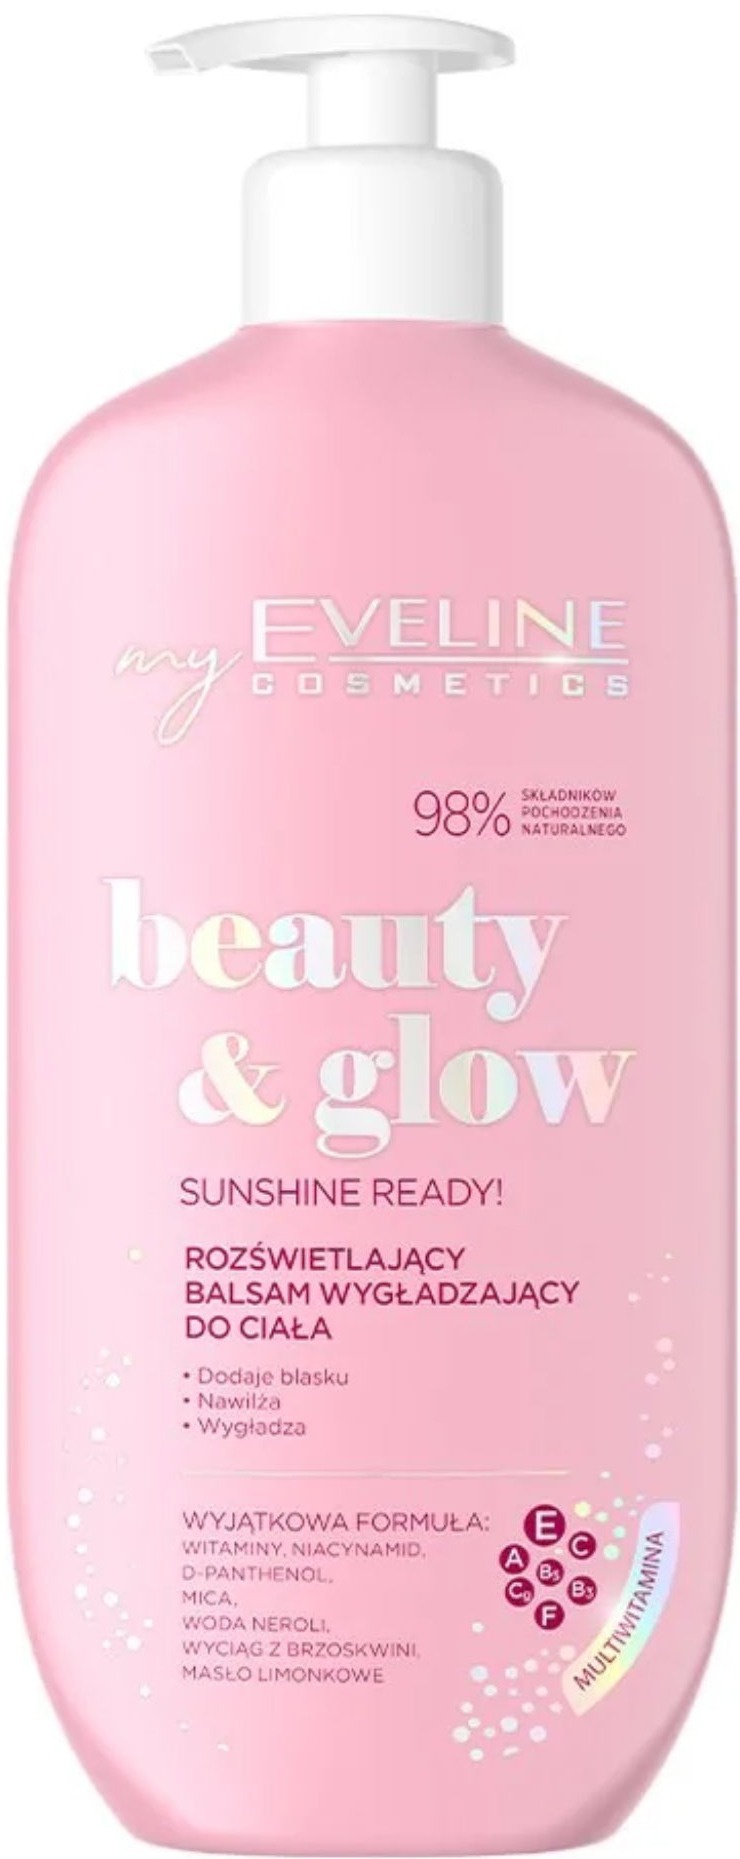 Eveline Beauty & Glow Sunshine Ready! Illuminating And Smoothing Body Lotion